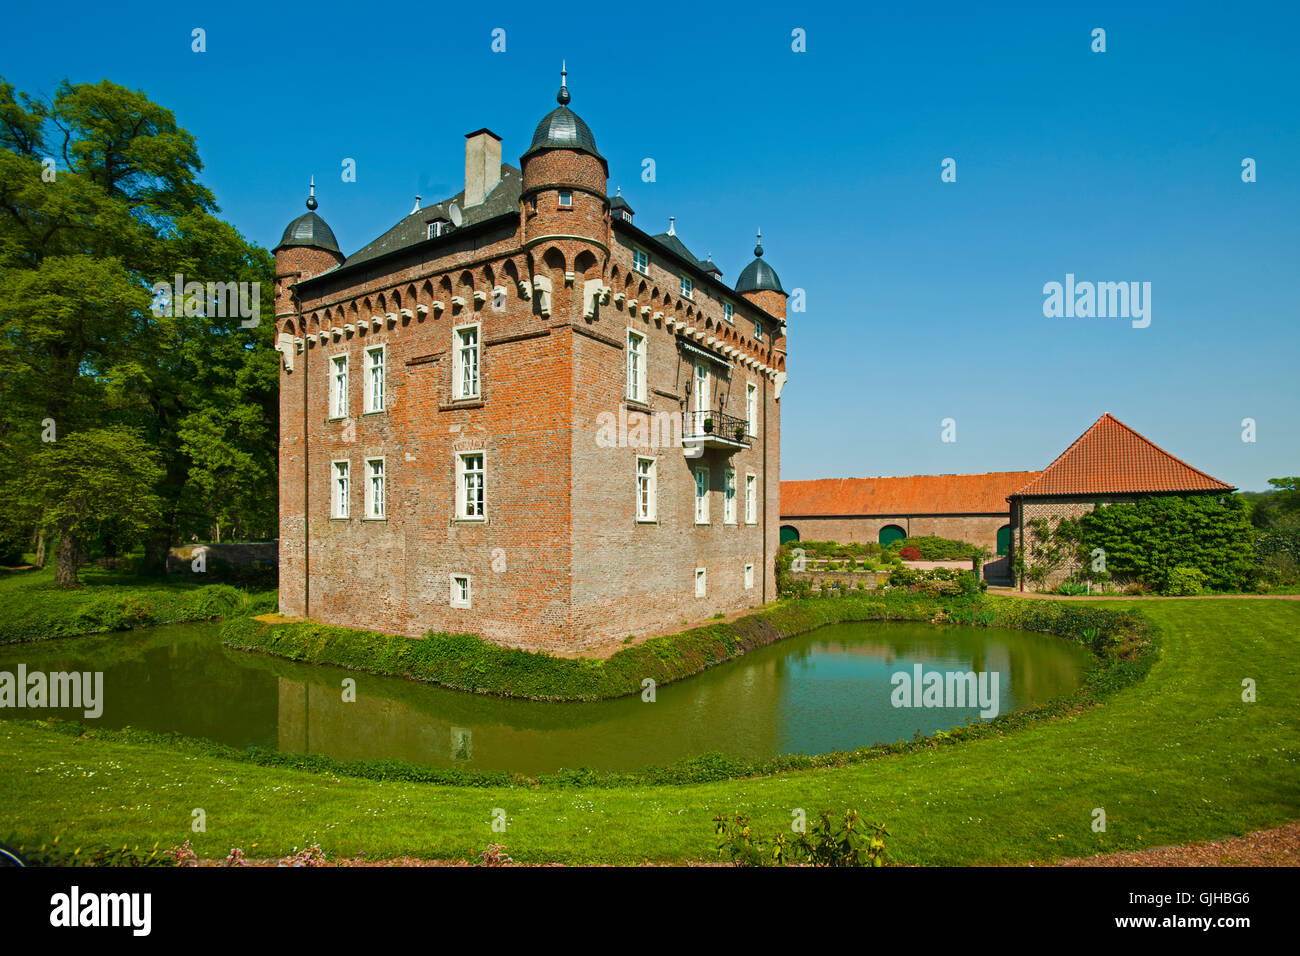 Deutschland, Nordrhein-Westfalen, Kreis Bergheim, Kerpen,  Schloss Loersfeld. Das Schloss wurde im 15. Jahrhundert erbaut, und i Stock Photo